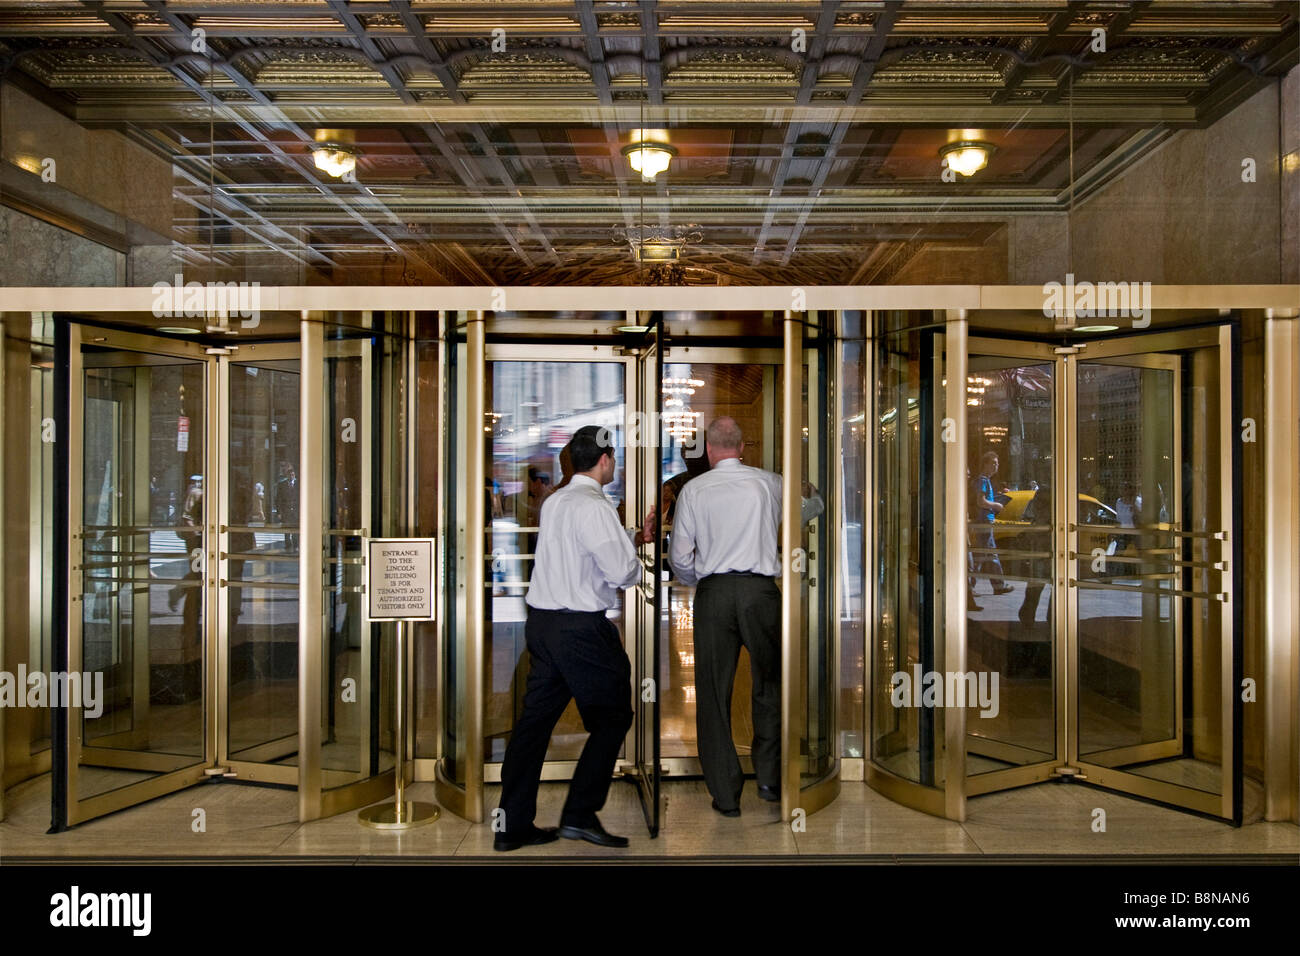 Imprenditori di entrare nel grandioso foyer di un edificio attraverso una delle numerose porte girevoli di vetro Foto Stock